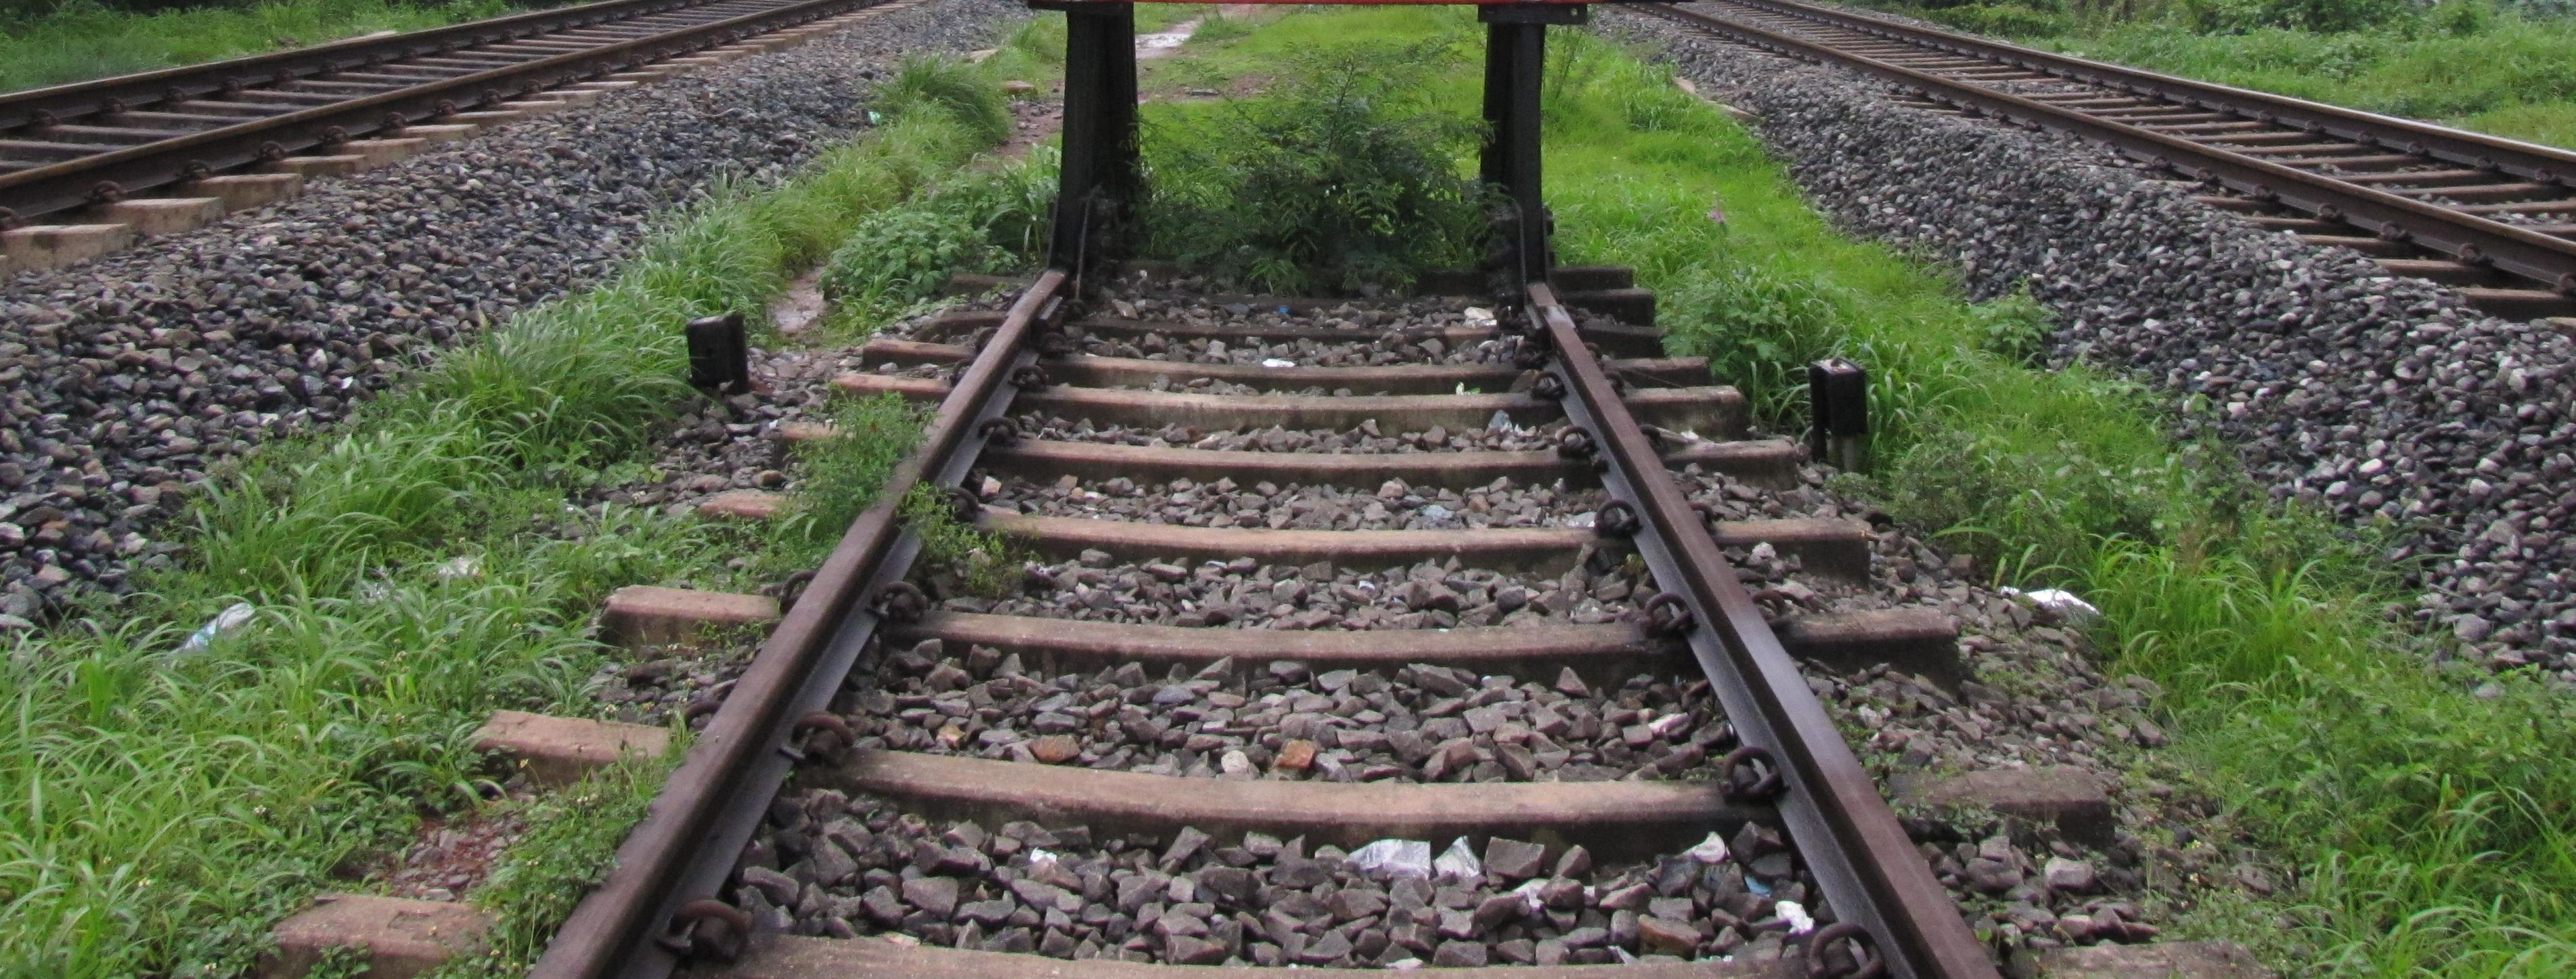 Σερβία: Σιδηρόδρομοι υψηλών ταχυτήτων με κινέζικη χρηματοδότηση